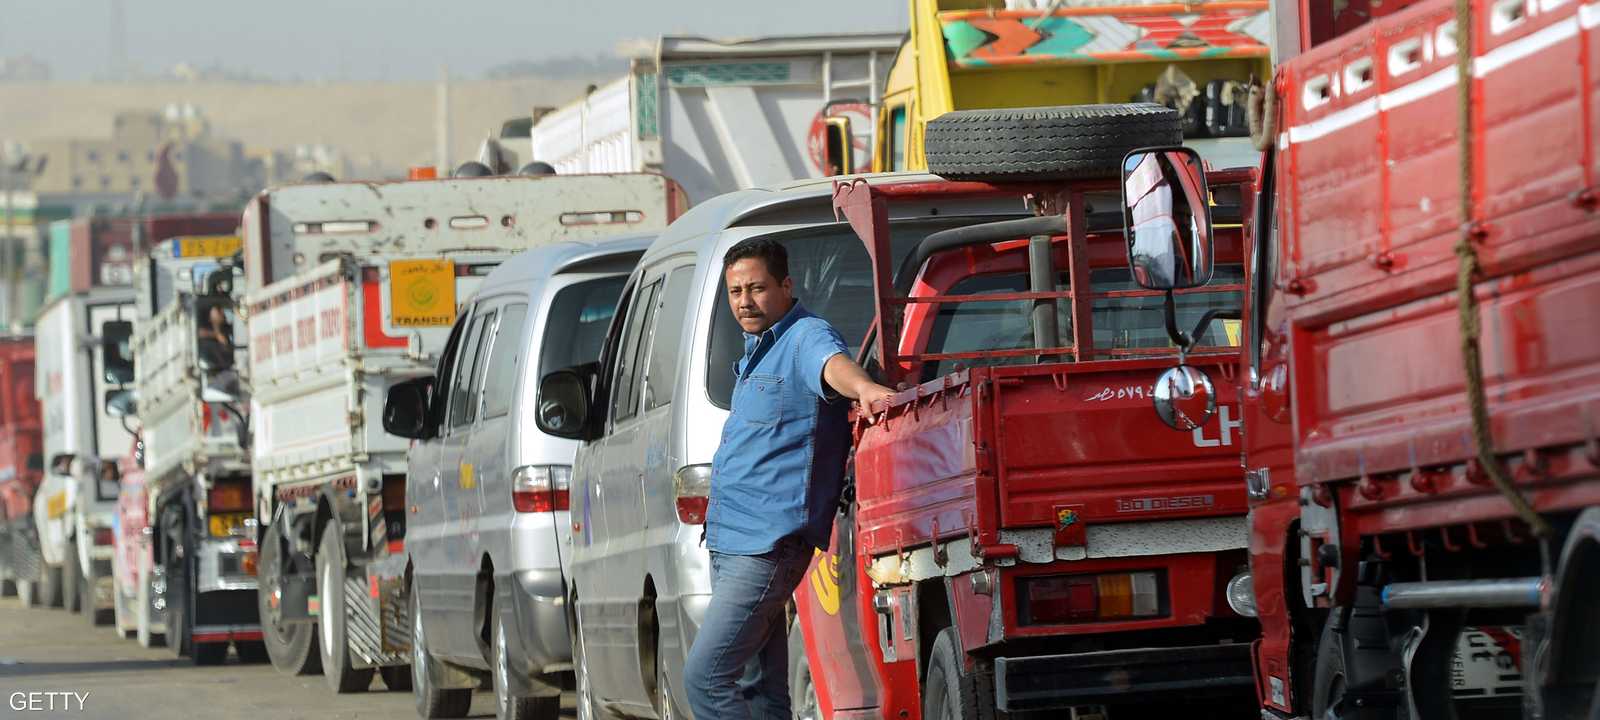 سيارات تصطف أمام محطة للوقود في مصر التي تعاني من أزمة وقود حادة